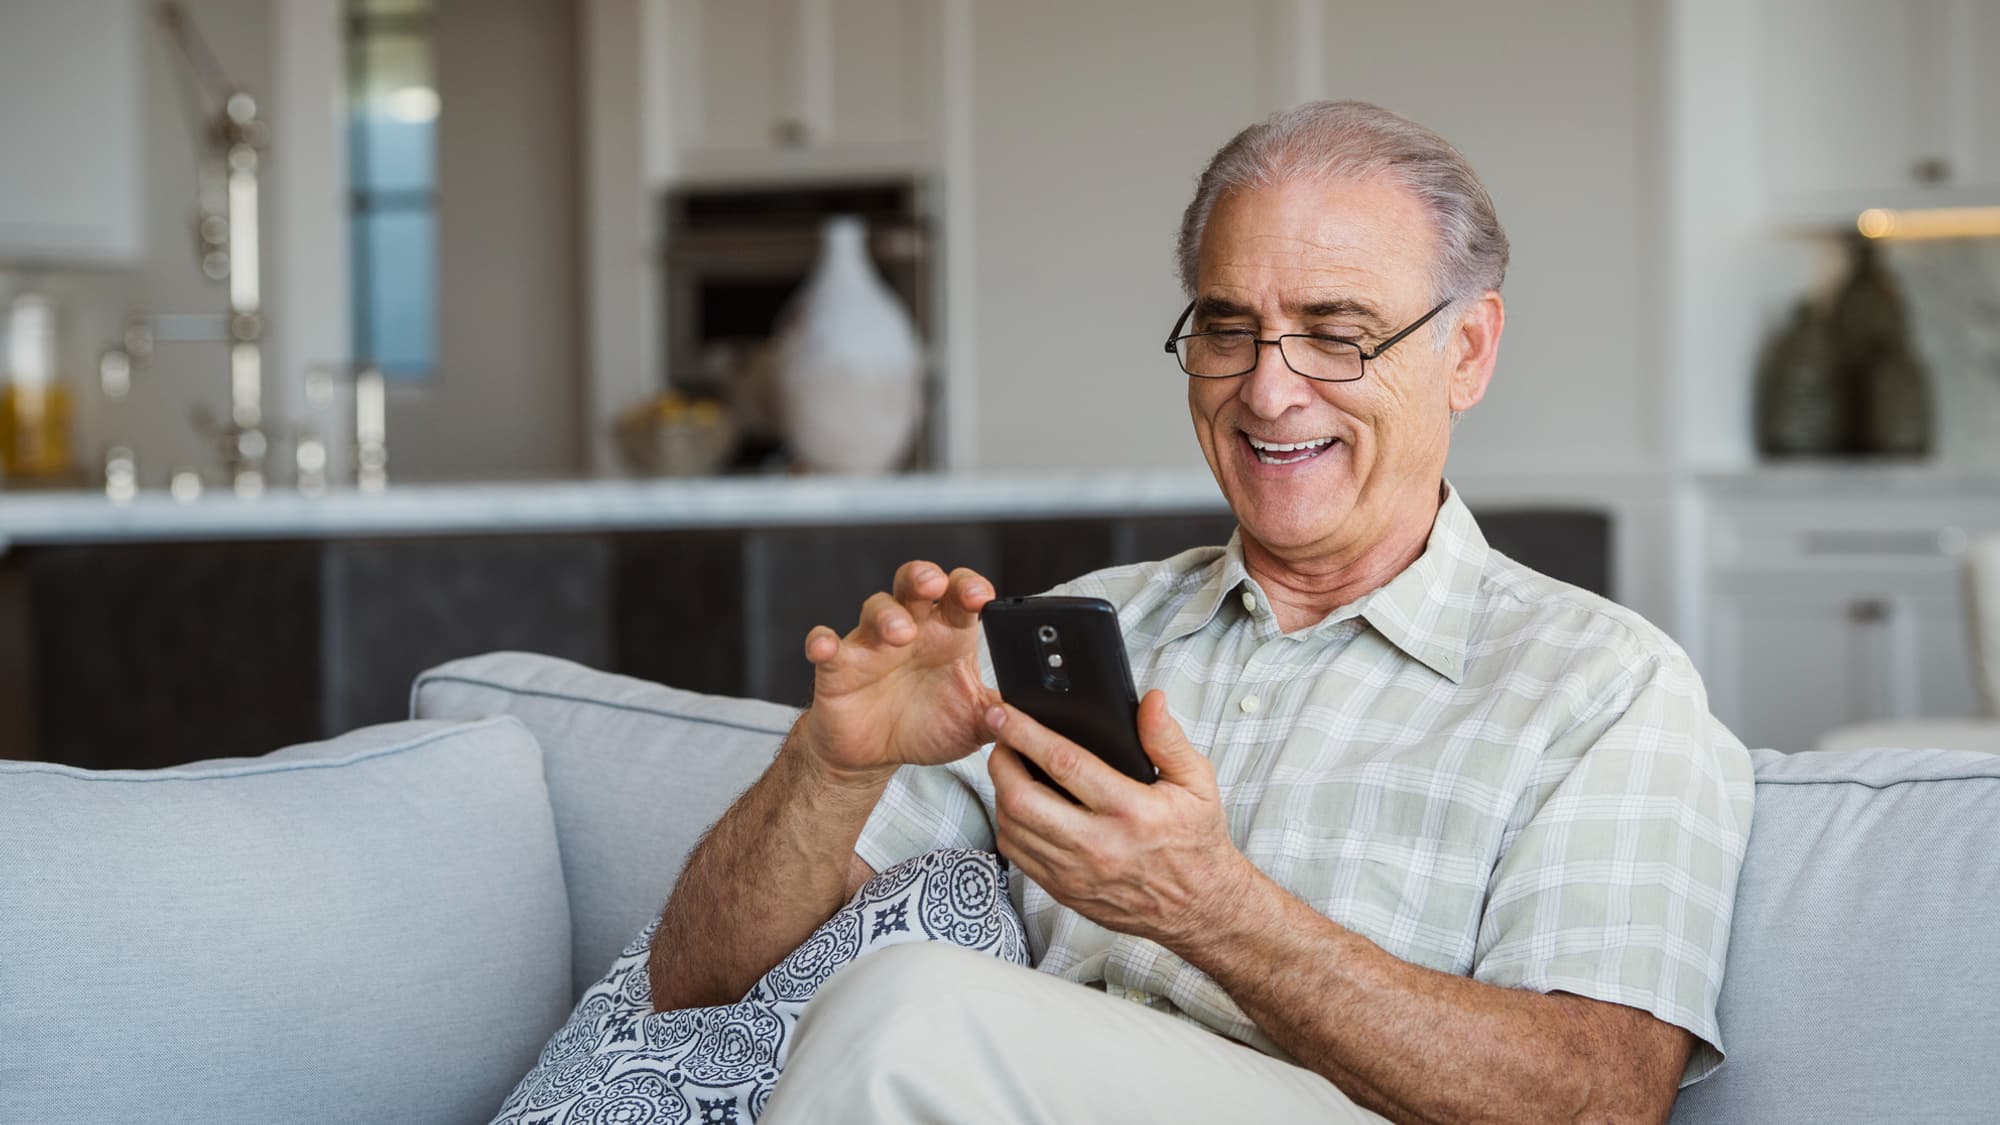 Un nouveau téléphone portable spécial pour les seniors - Cap Retraite